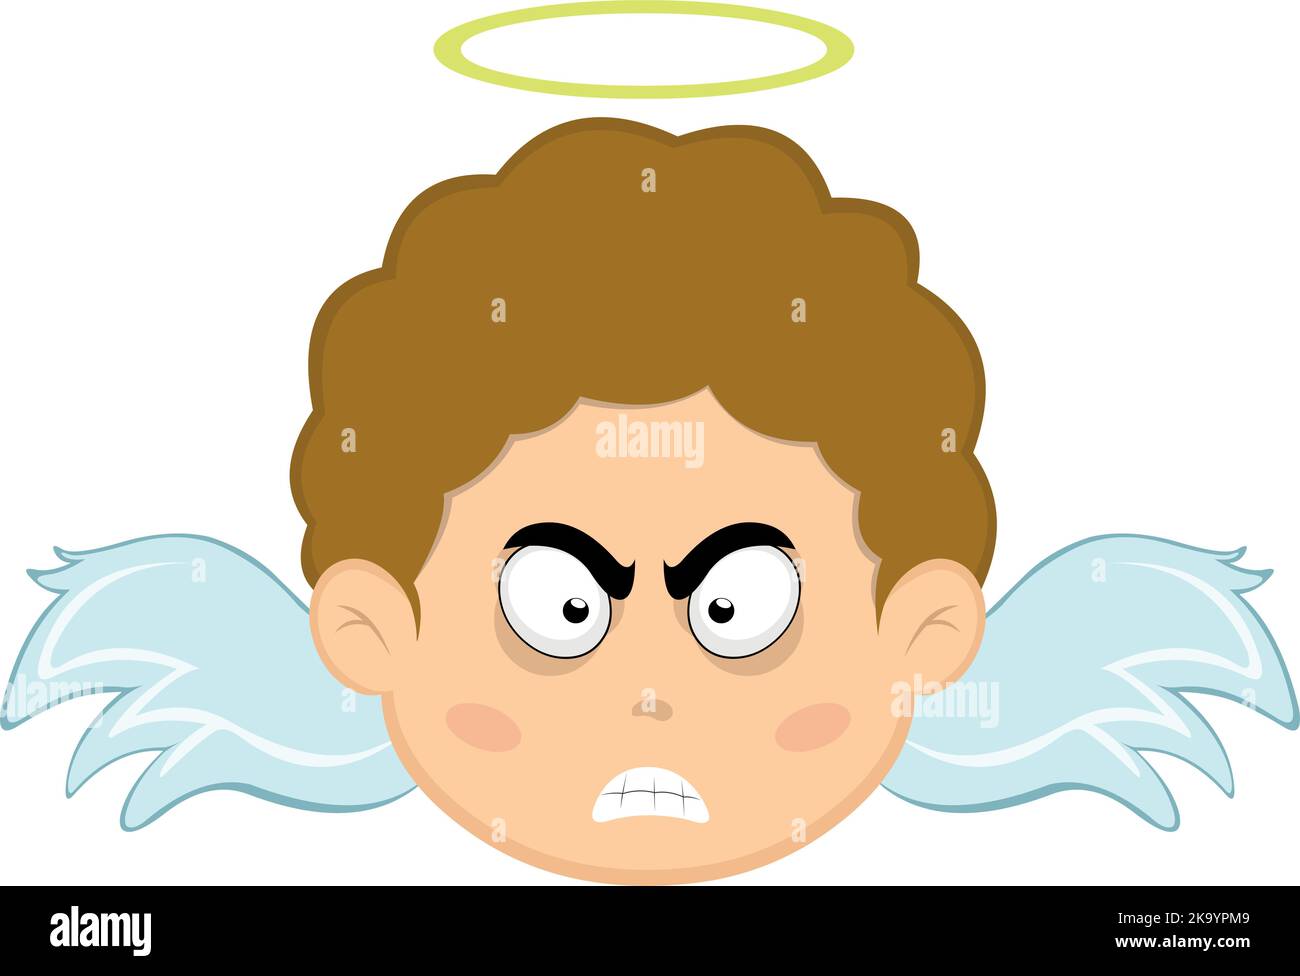 Vektor-Illustration eines Kindes Engel Cartoon mit einem wütenden Ausdruck Stock Vektor